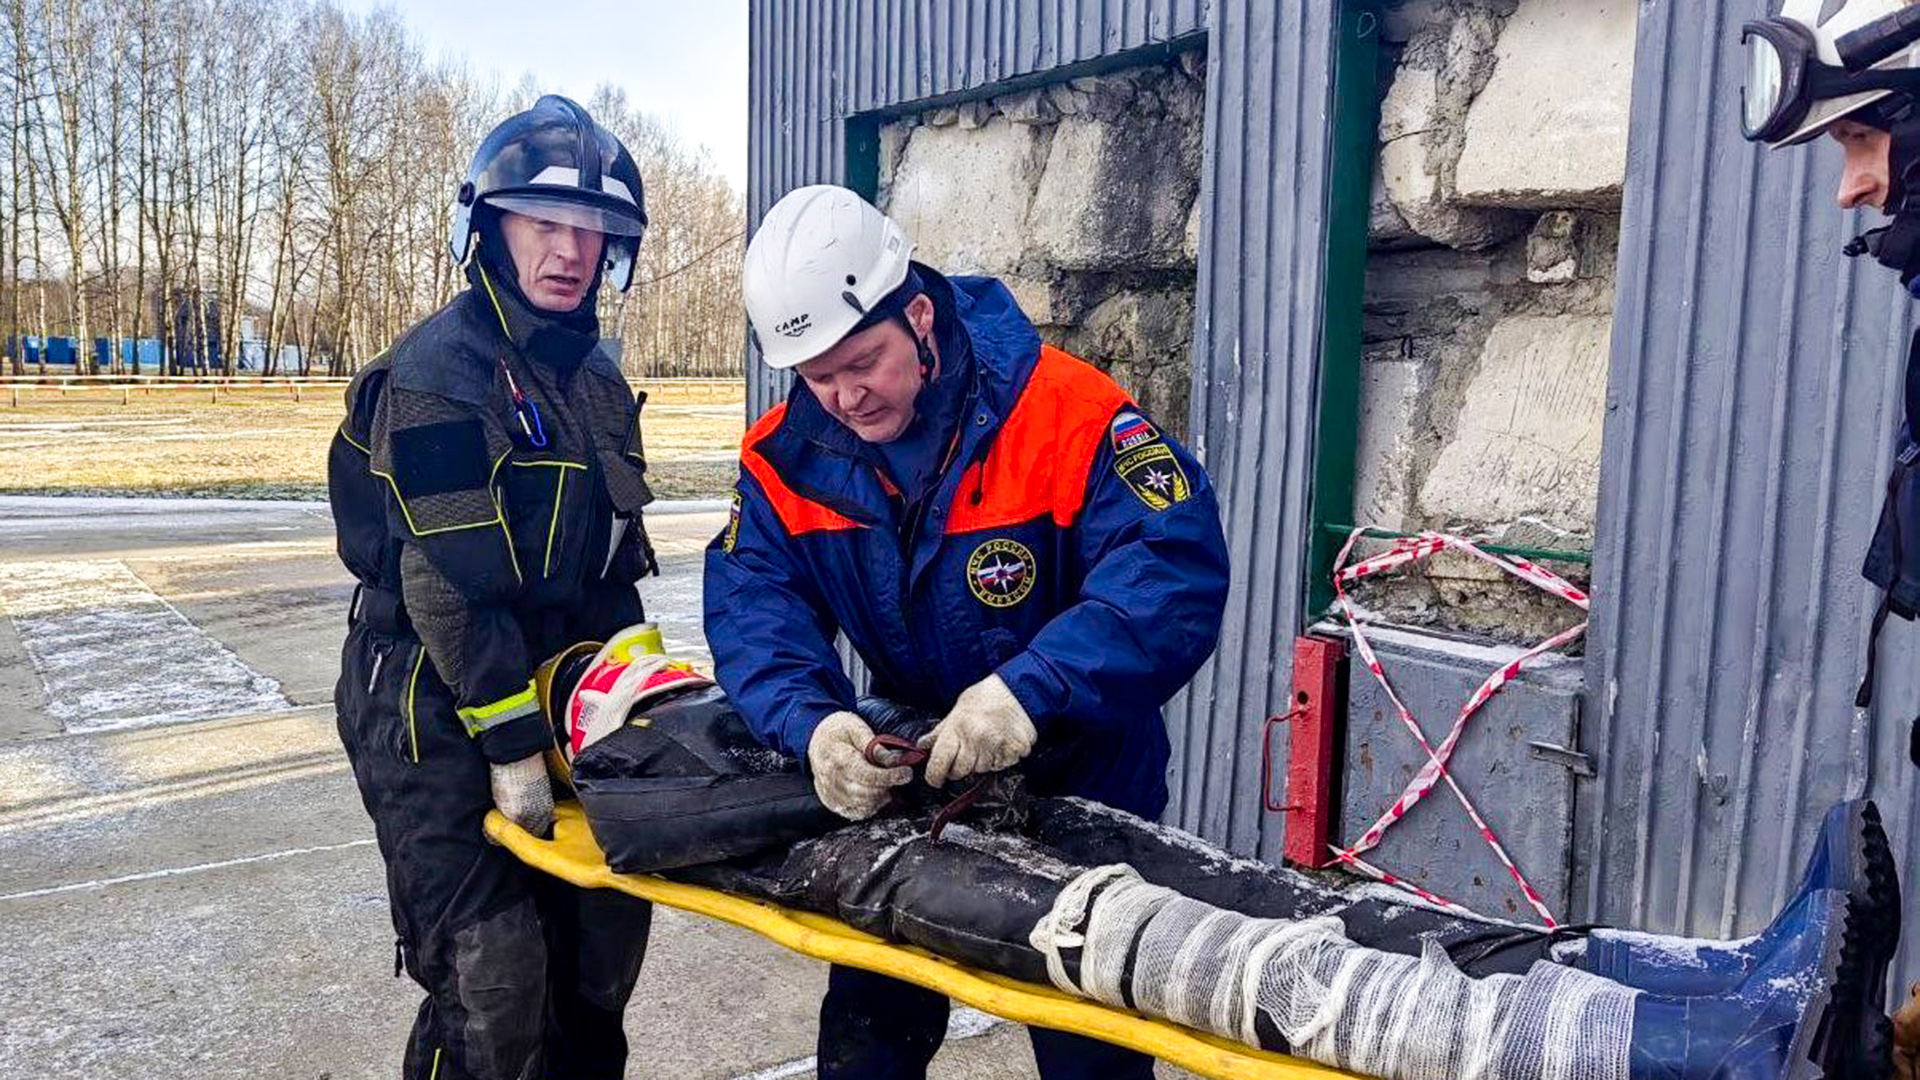 Руководитель поисково-спасательного отряда на Парусе стал первым в Комсомольске-на-Амуре спасателем международного класса